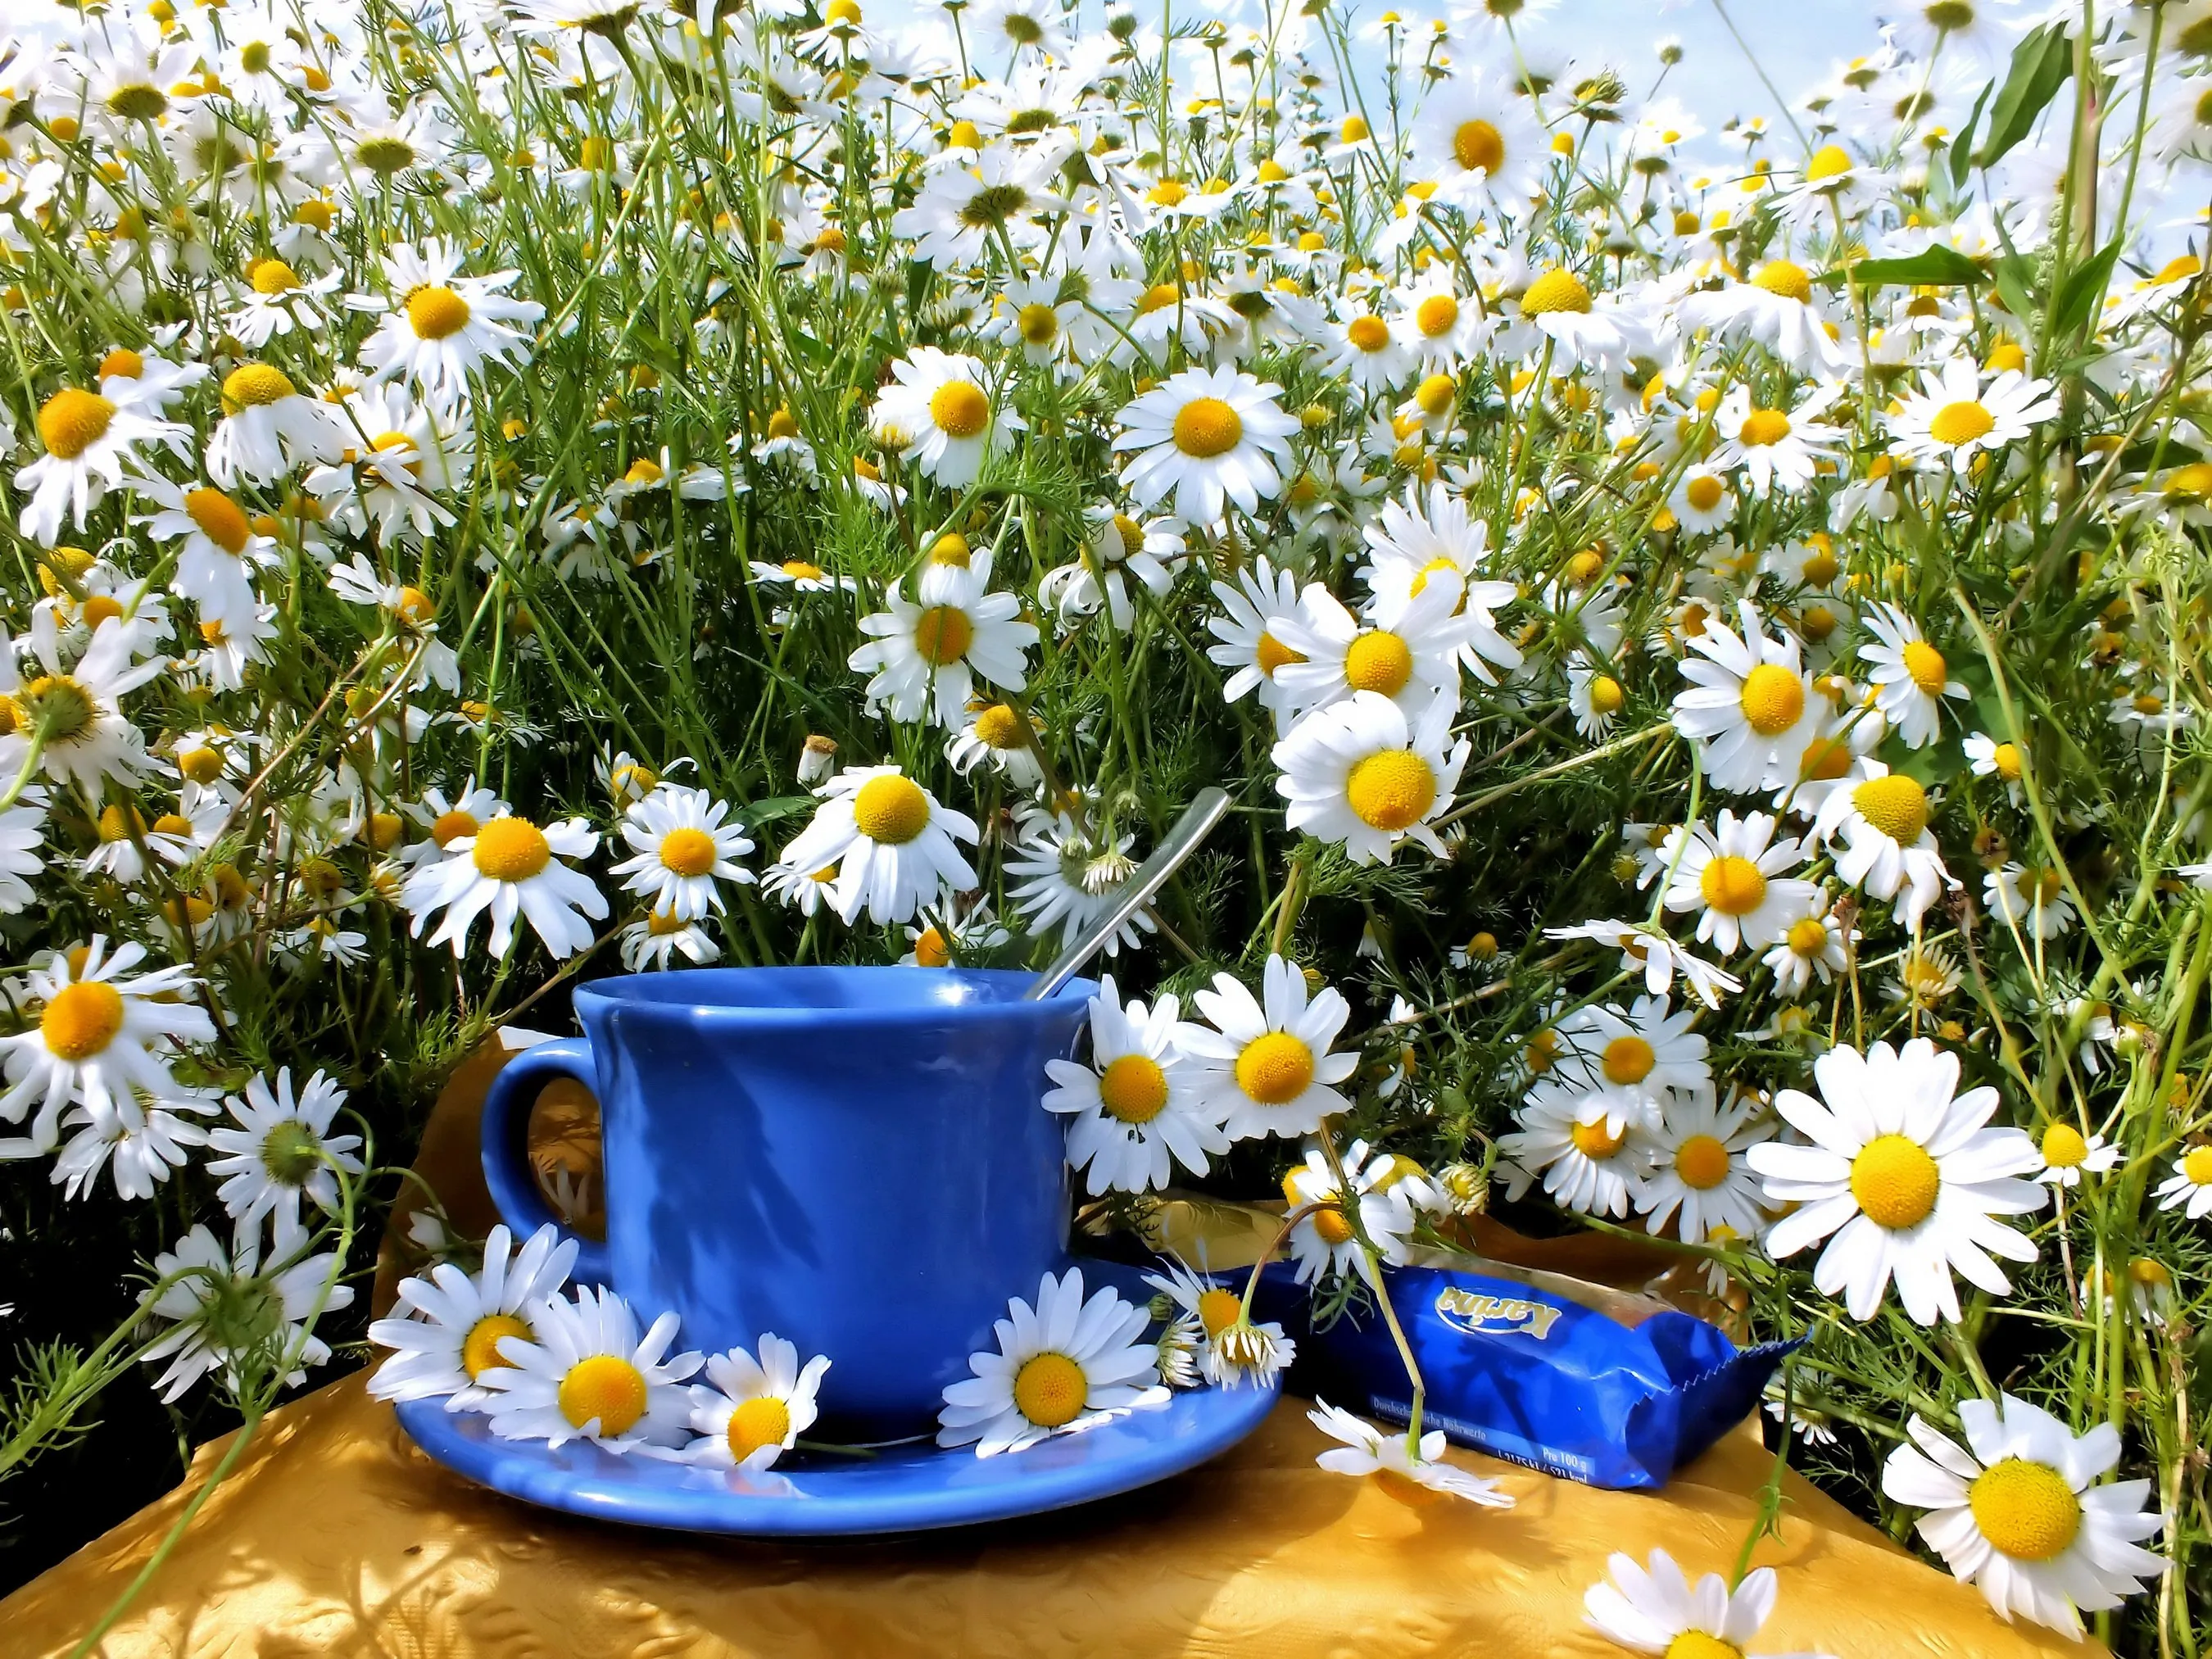 С добрым утром и прекрасного дня! 🥰 #доброеутро #цветы#букет#ромашки#розы#мак#орхидея  # | Instagram